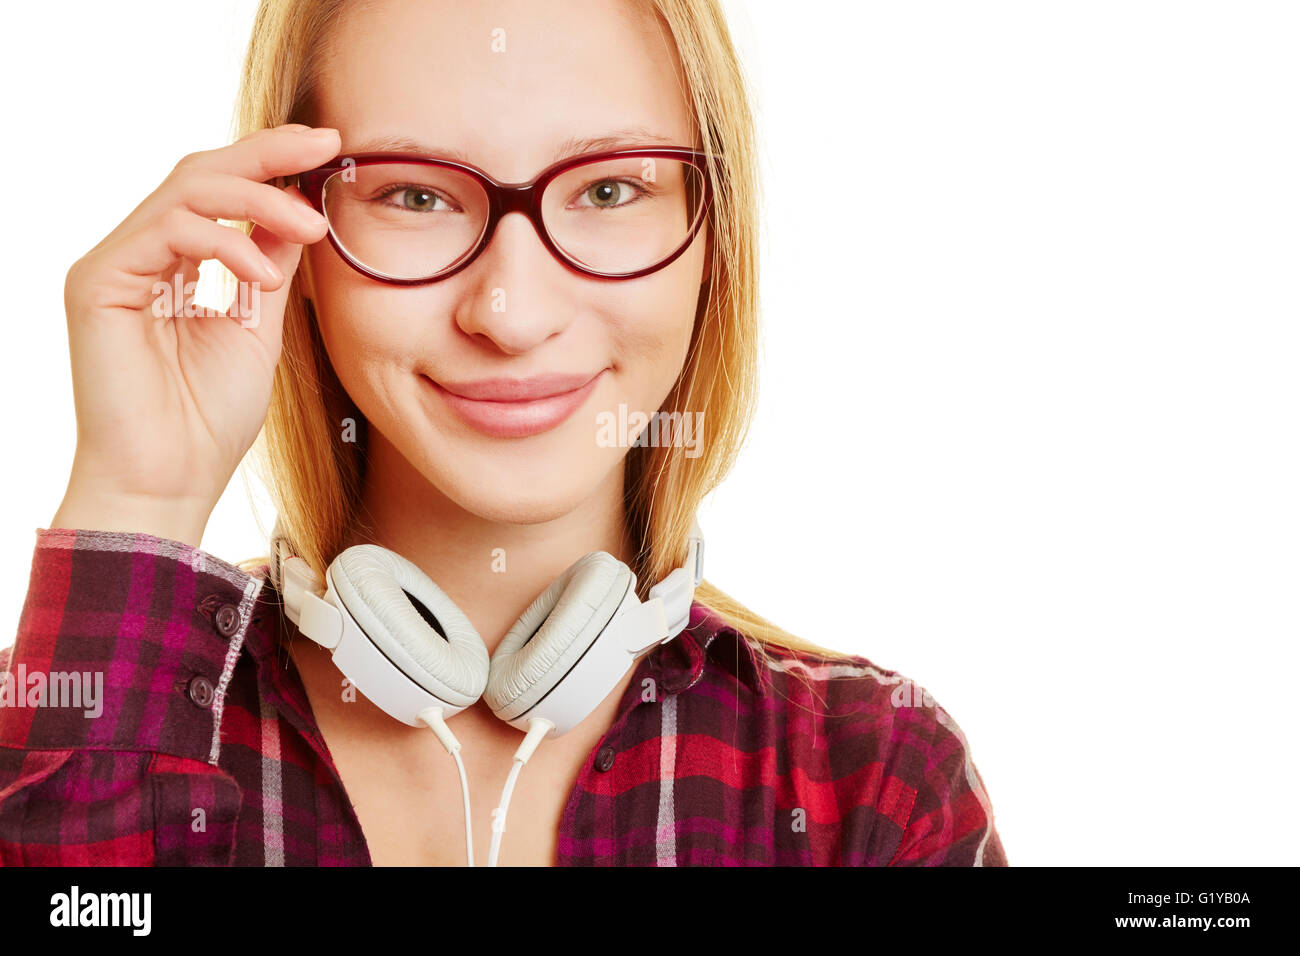 Lächelndes Mädchen mit der Hand auf ihre Brille Stockfoto